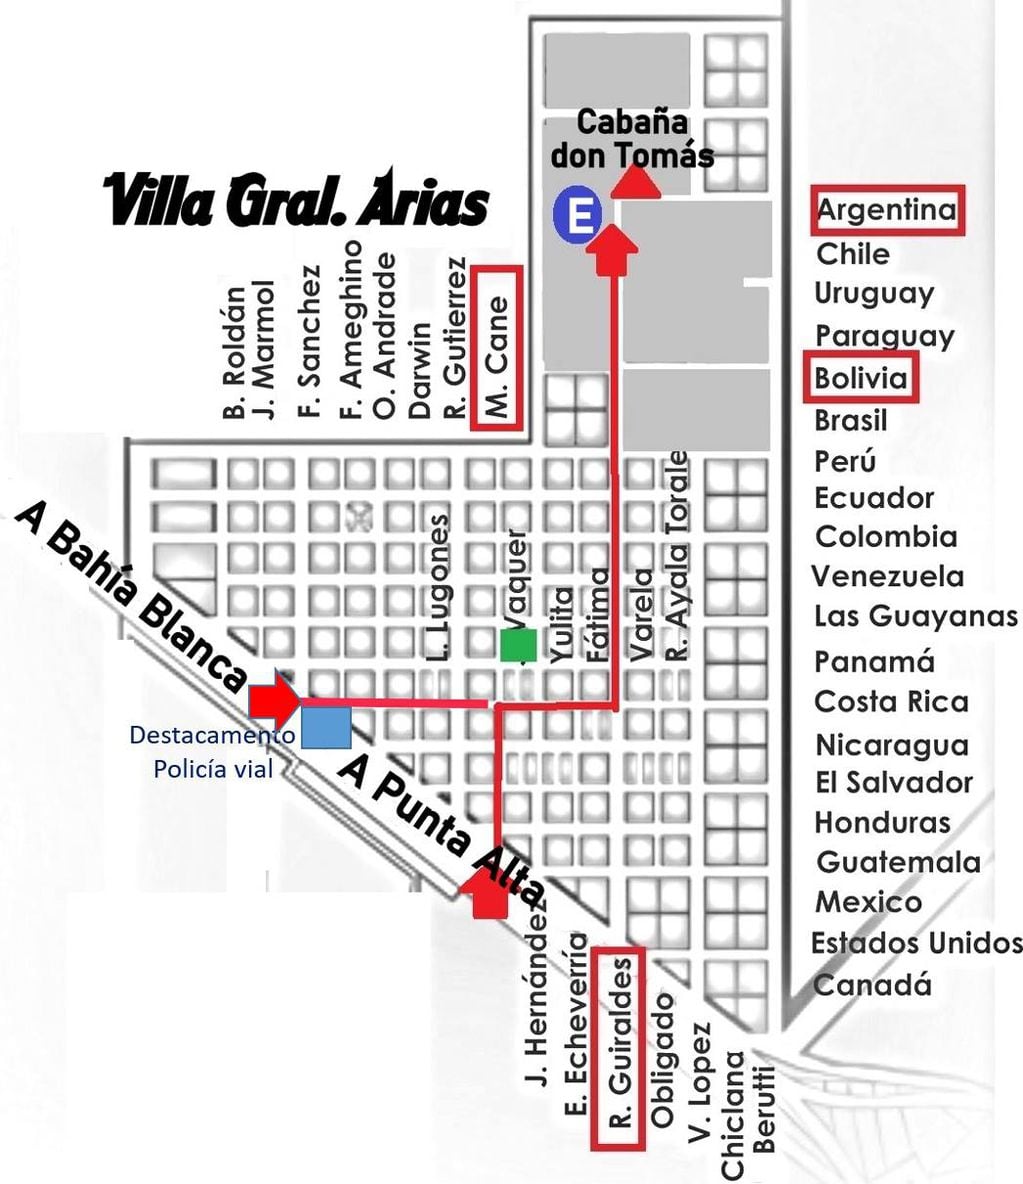 Mapa para llegar a la Feria rural de Villa Arias